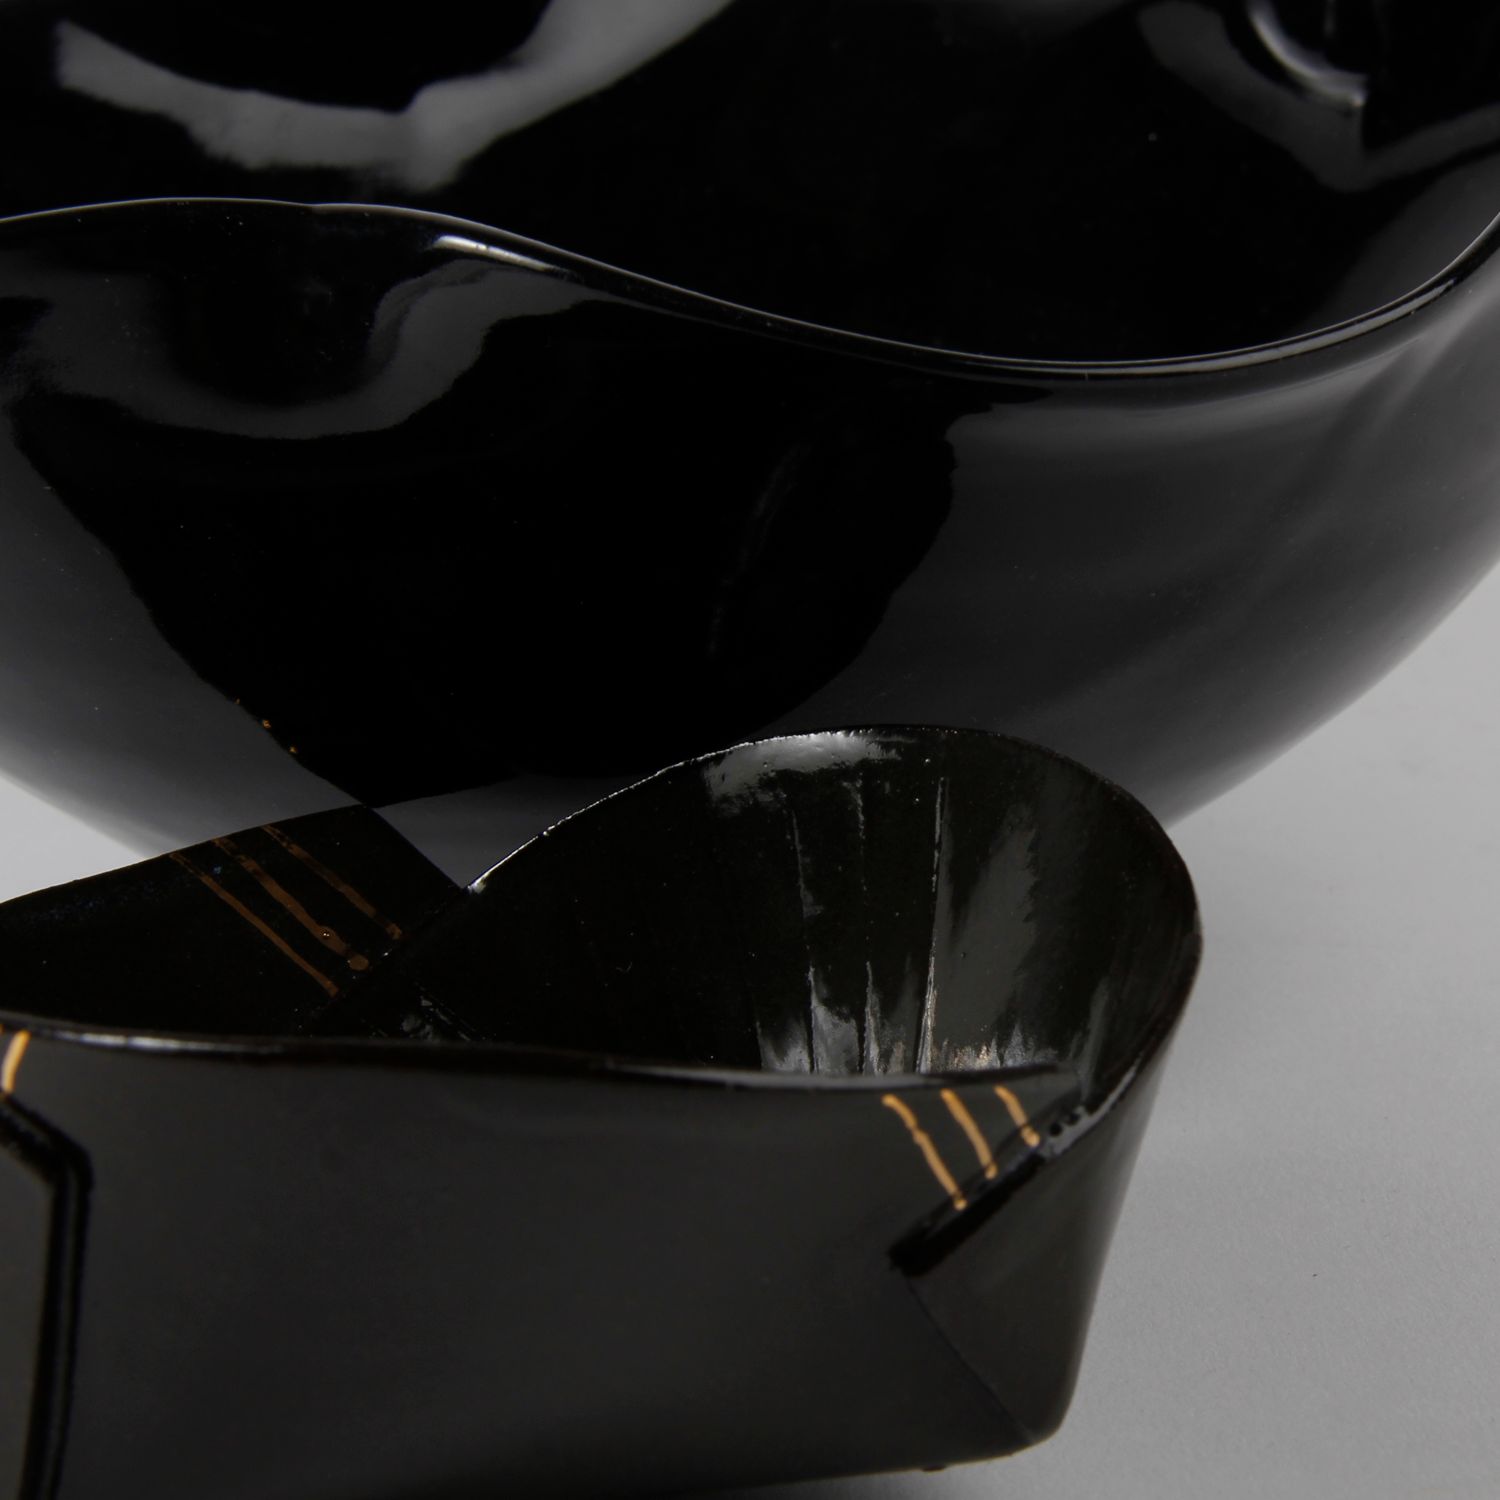 Natalie Waddell: XX Large Black Folded Bowl Product Image 2 of 4